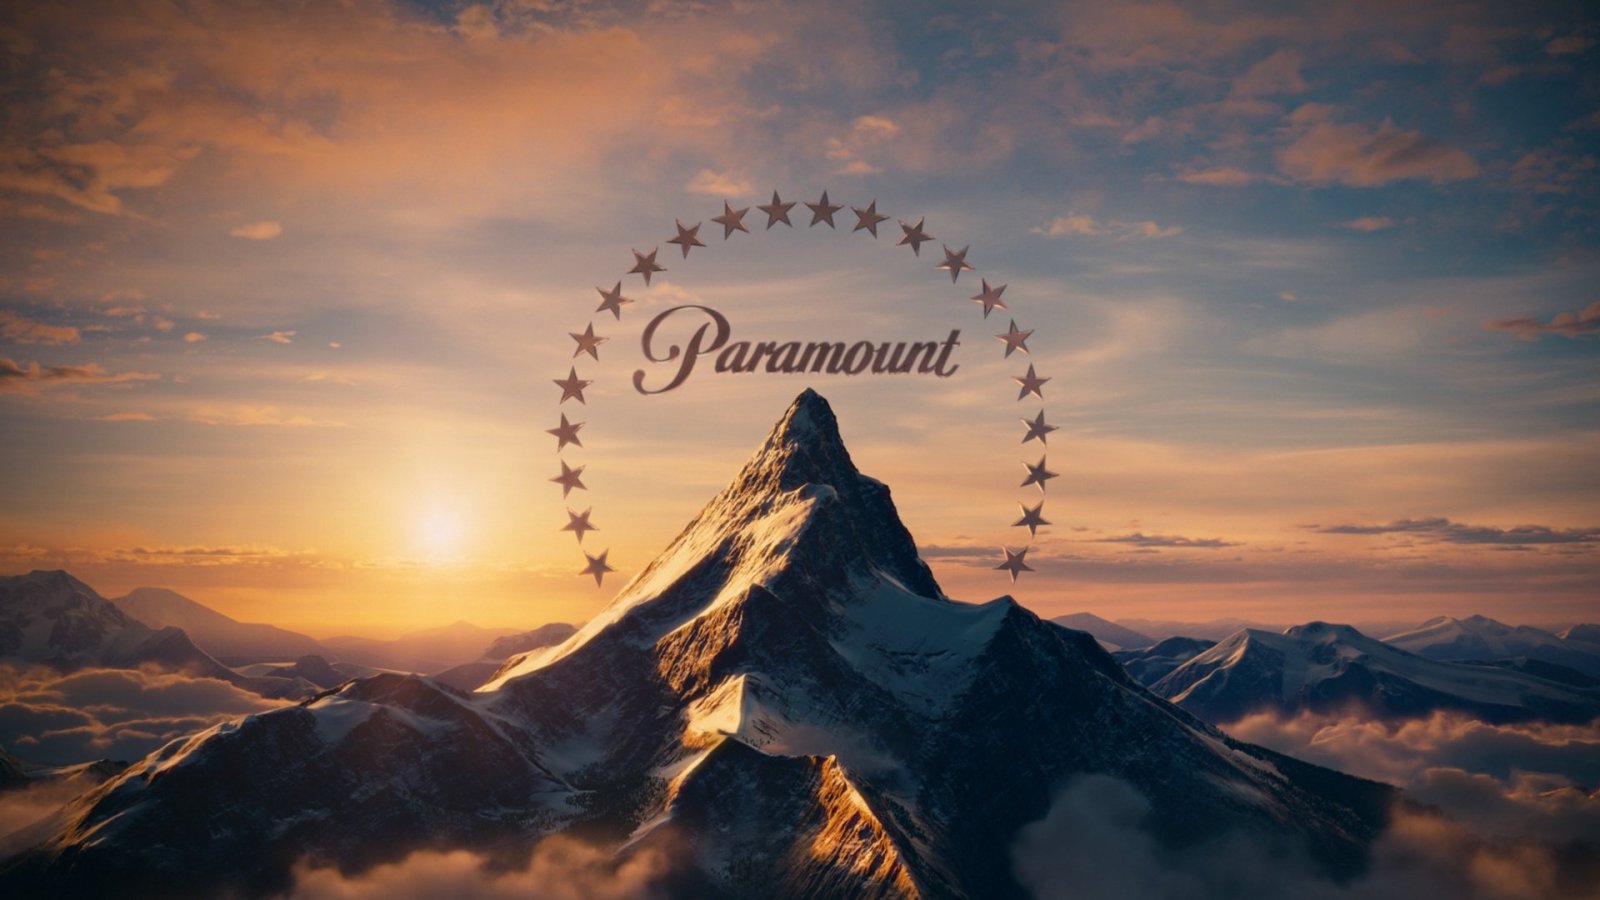 Sony prepara l'acquisizione di Paramount, secondo il New York Times